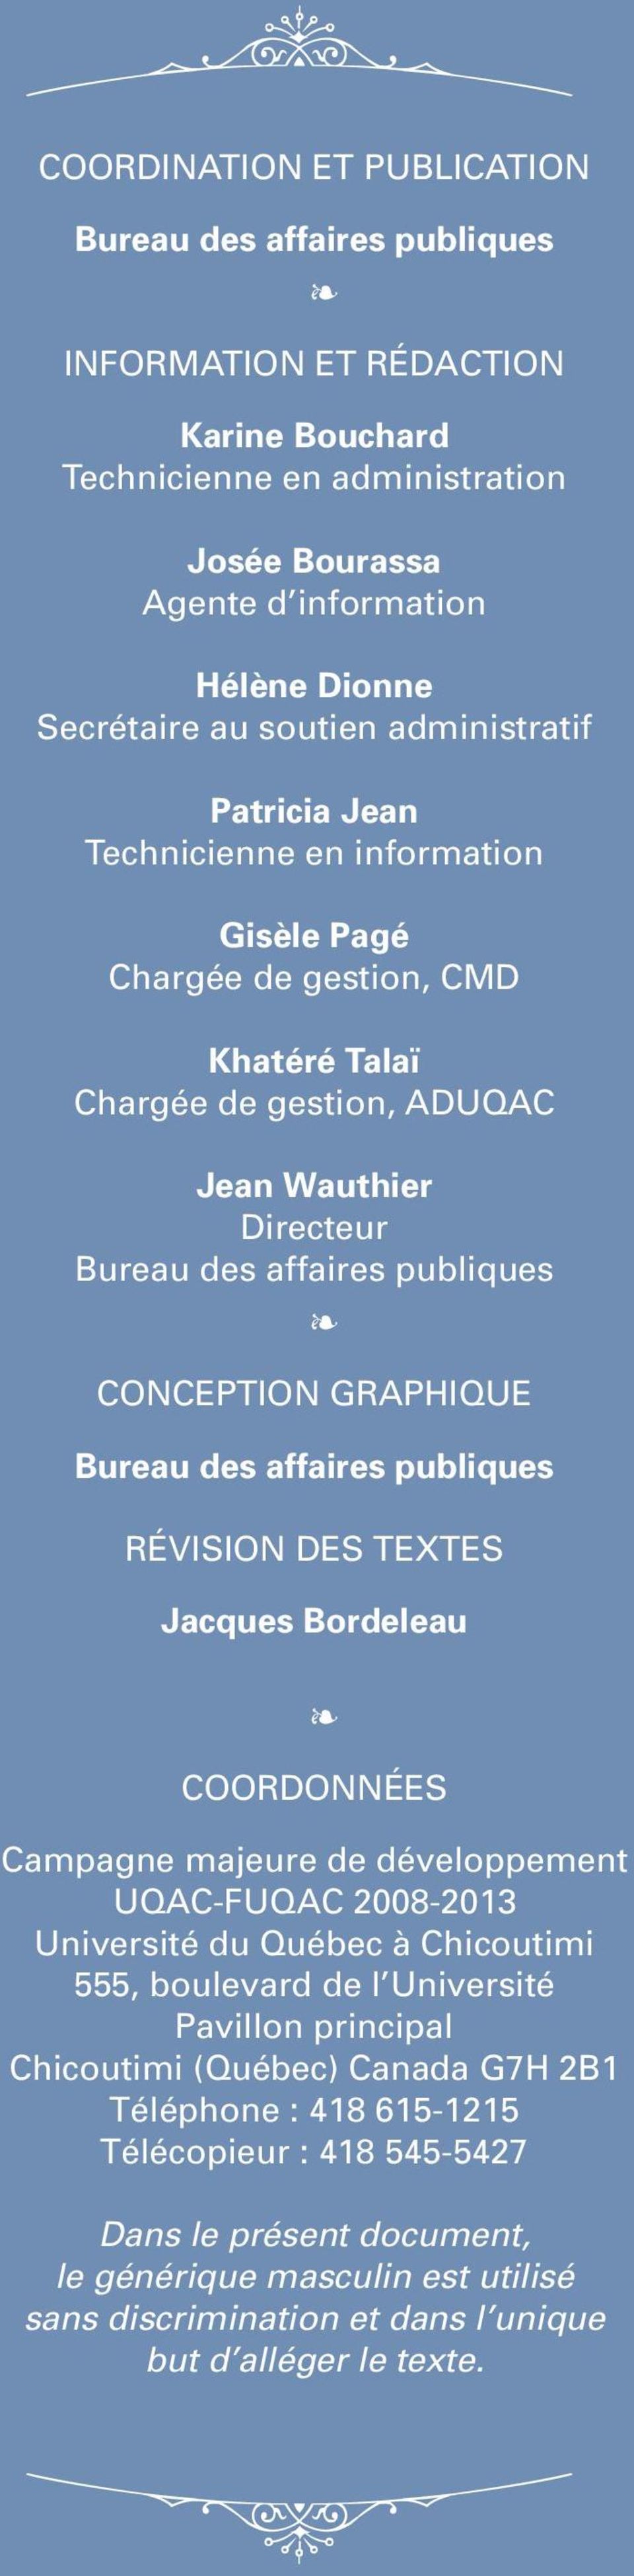 Conception graphique Bureau des affaires publiques Révision des textes Jacques Bordeleau Coordonnées Campagne majeure de développement UQAC-FUQAC 2008-2013 Université du Québec à Chicoutimi 555,